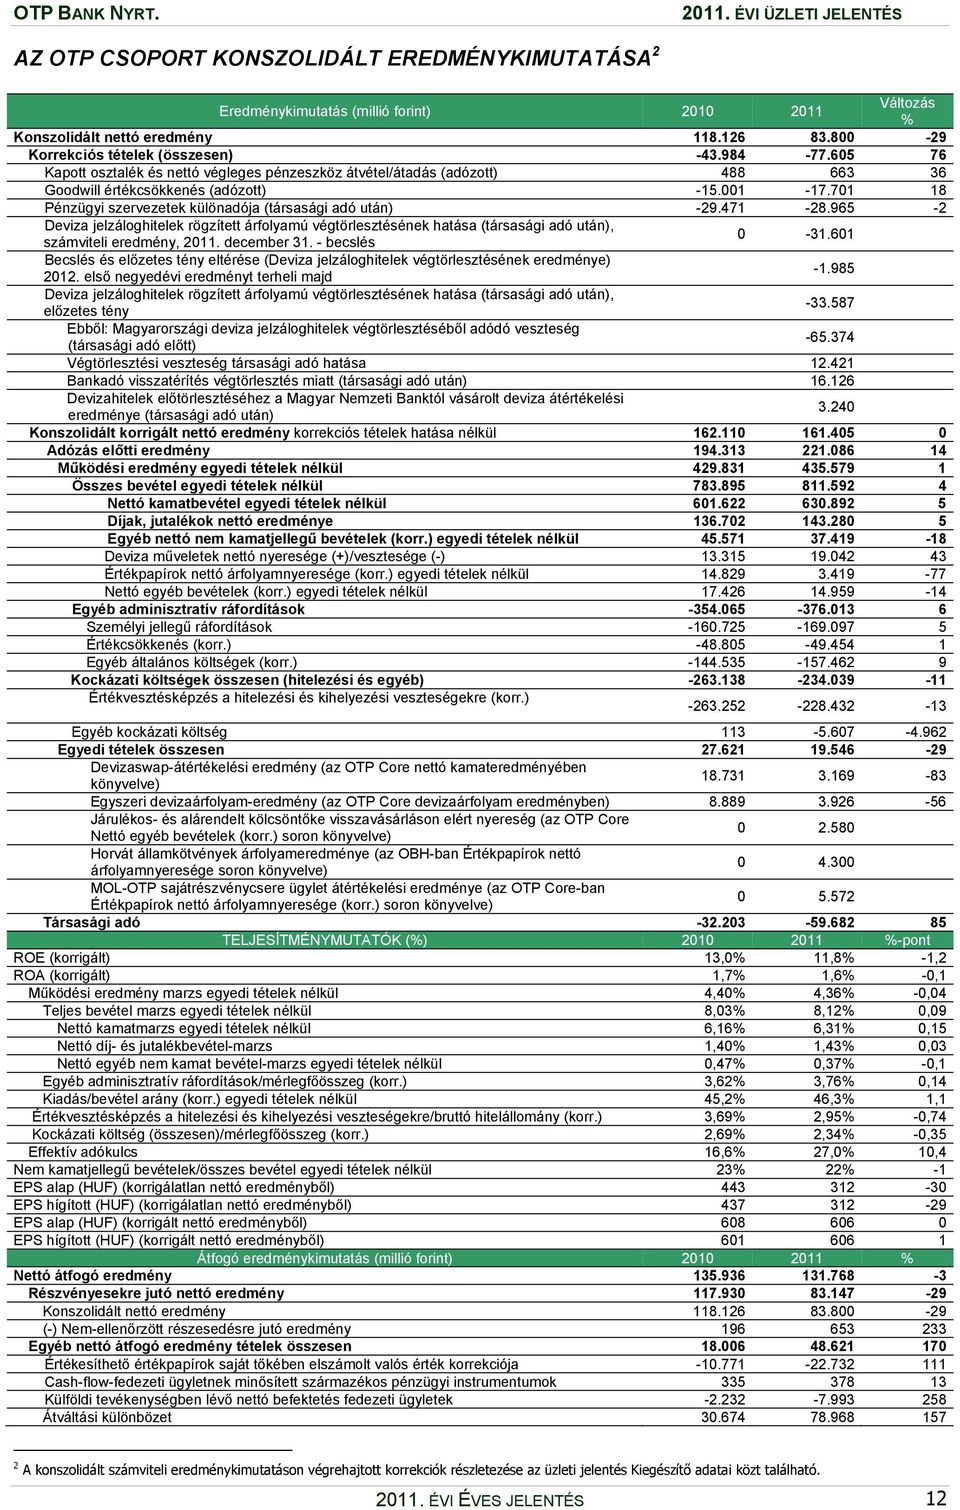 701 18 Pénzügyi szervezetek különadója (társasági adó után) -29.471-28.965-2 Deviza jelzáloghitelek rögzített árfolyamú végtörlesztésének hatása (társasági adó után), számviteli eredmény, 2011.